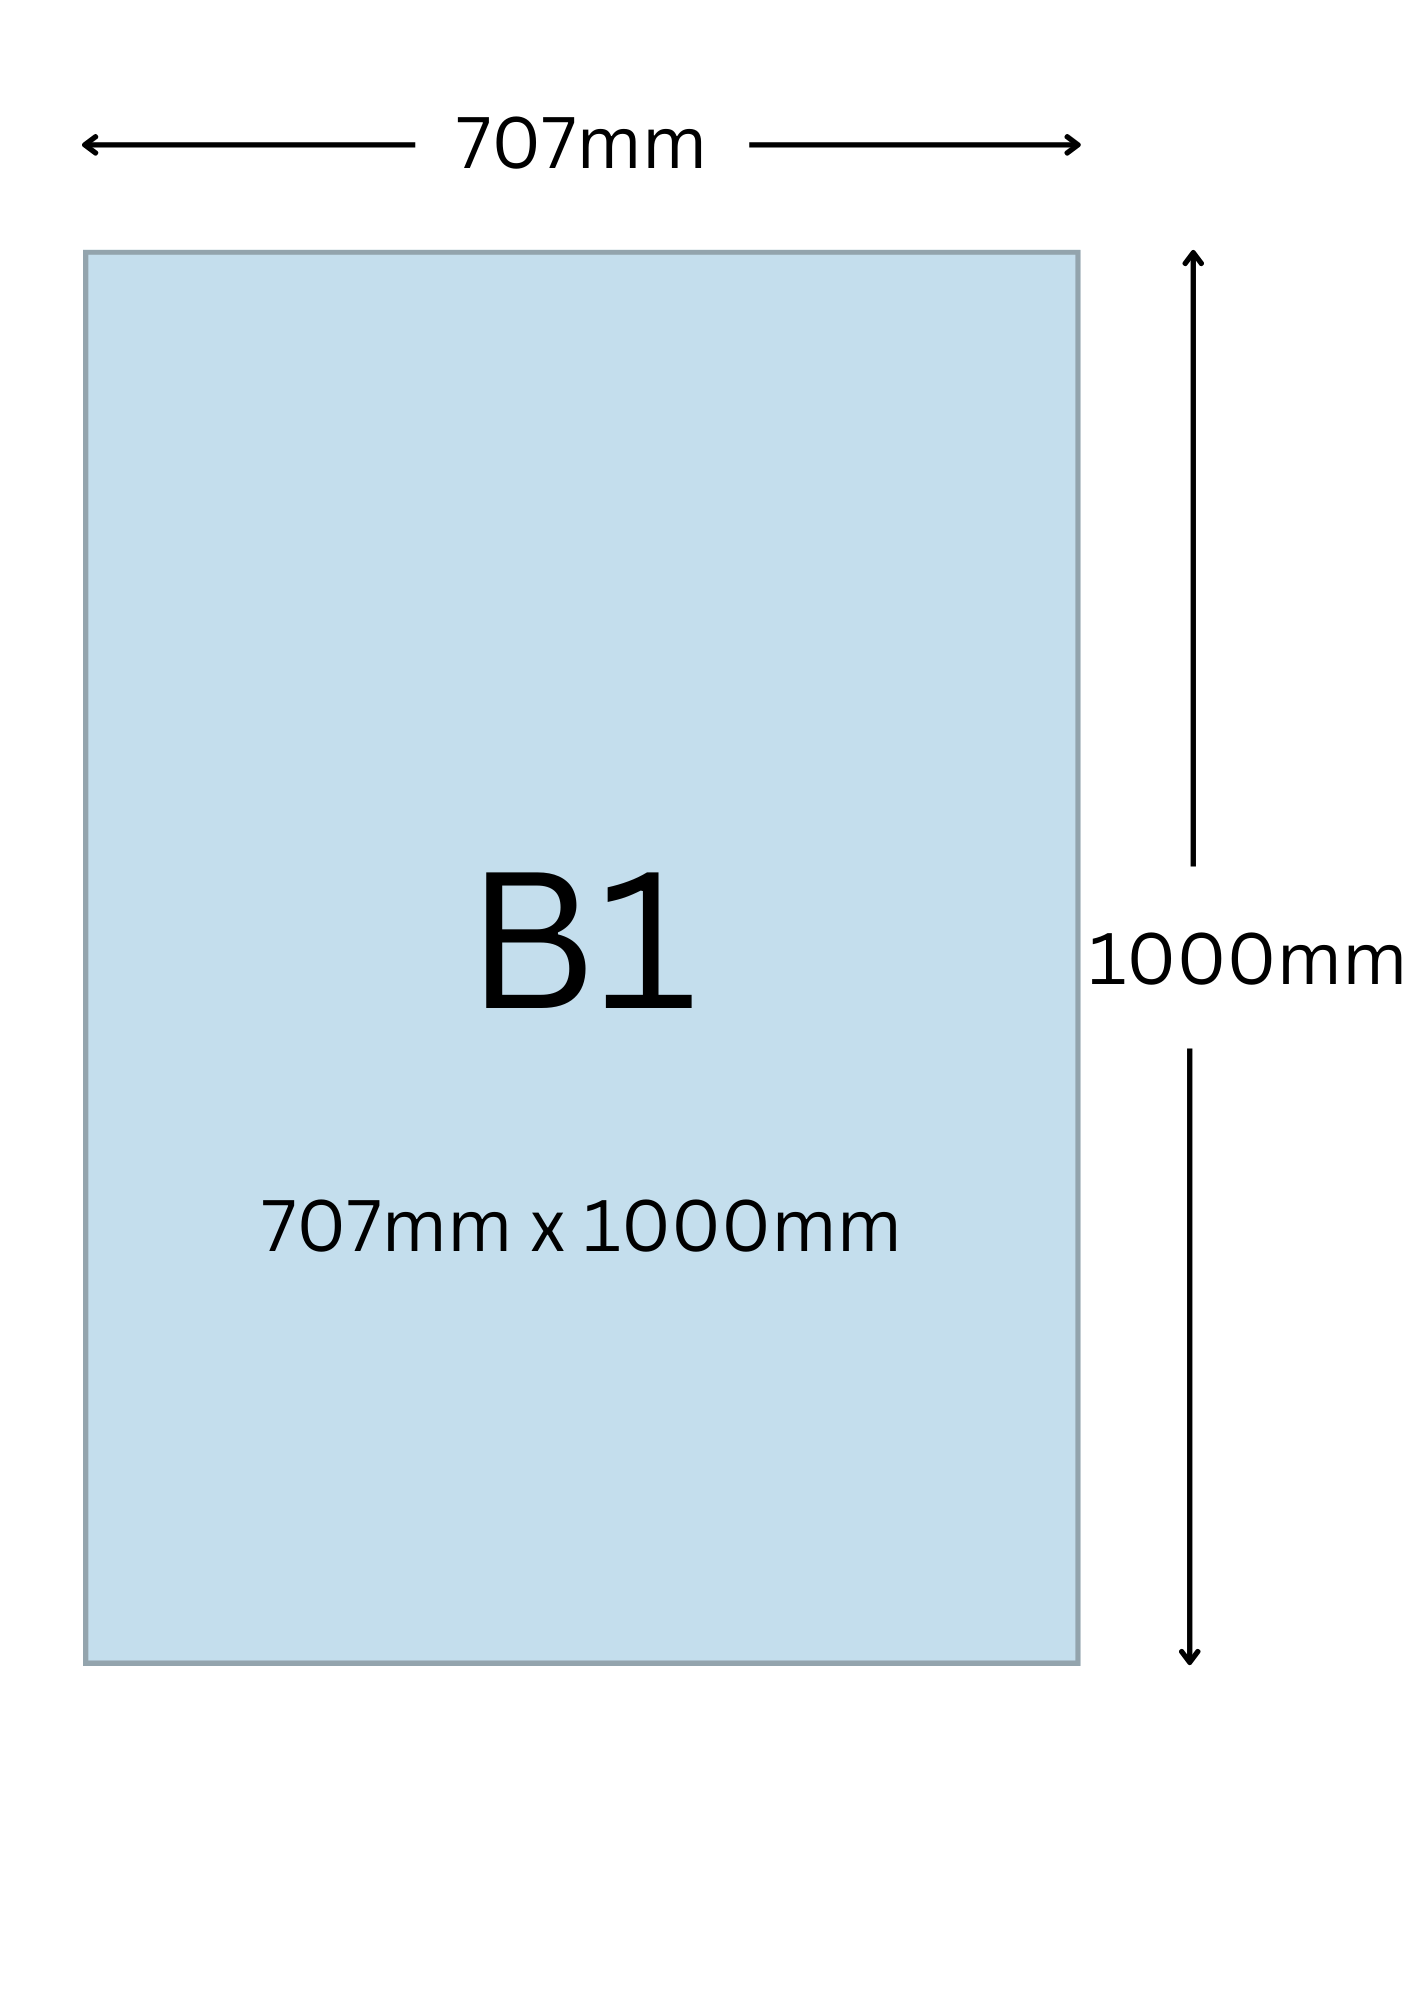 B1尺寸公分, B1紙張尺寸大小, B1紙張對應開數是幾開